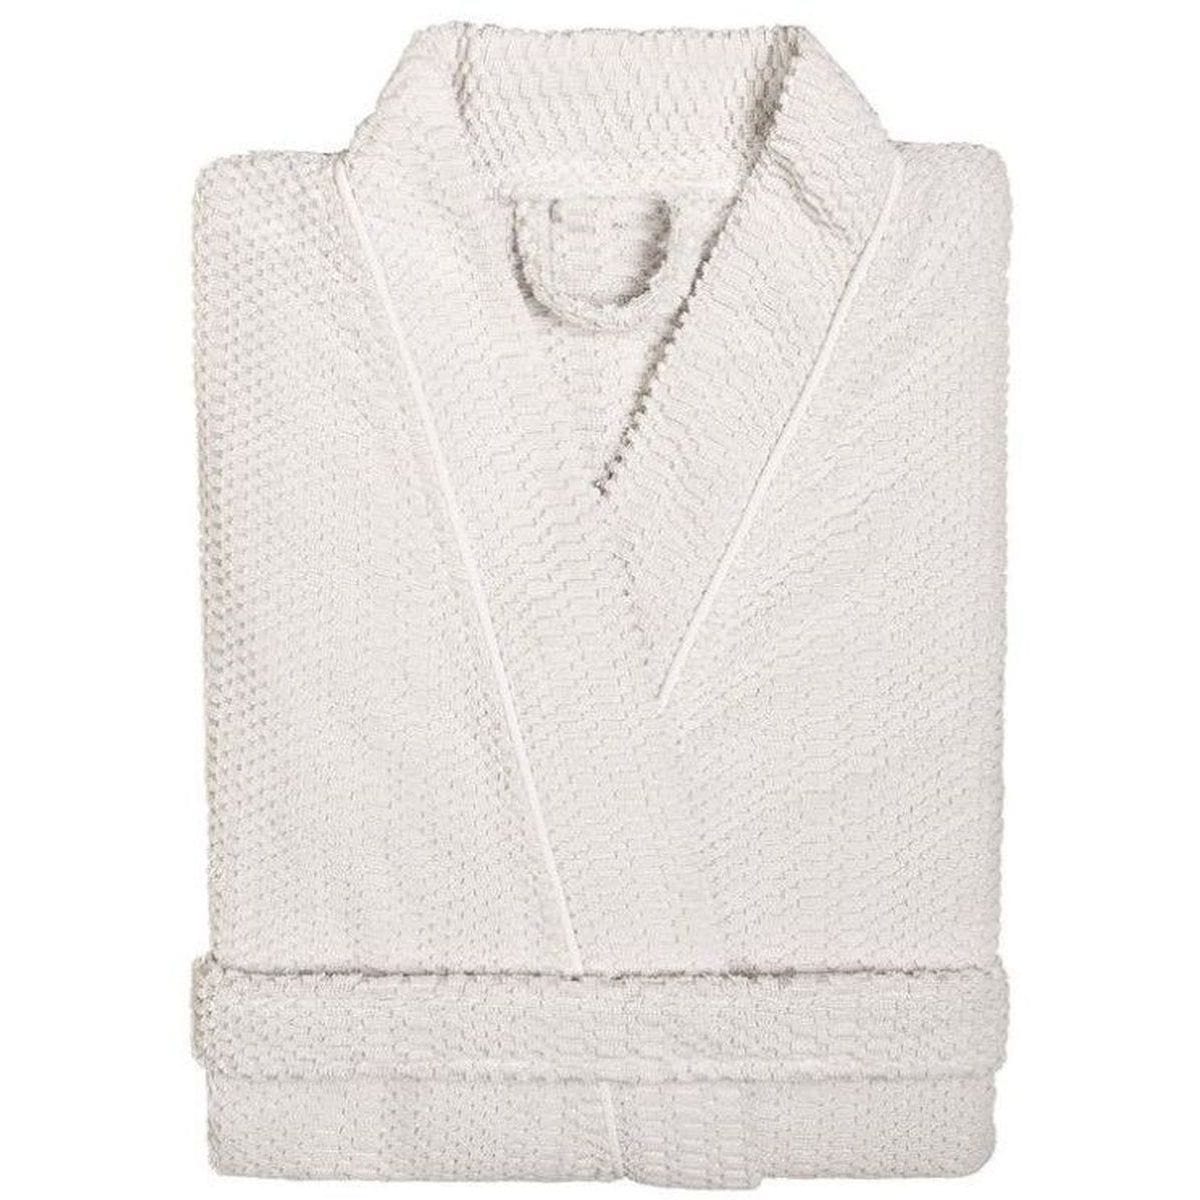 Graccioza Graccioza Clean Ocean Bathrobe (Kimono) - Available in 2 colors White / S 341394920003